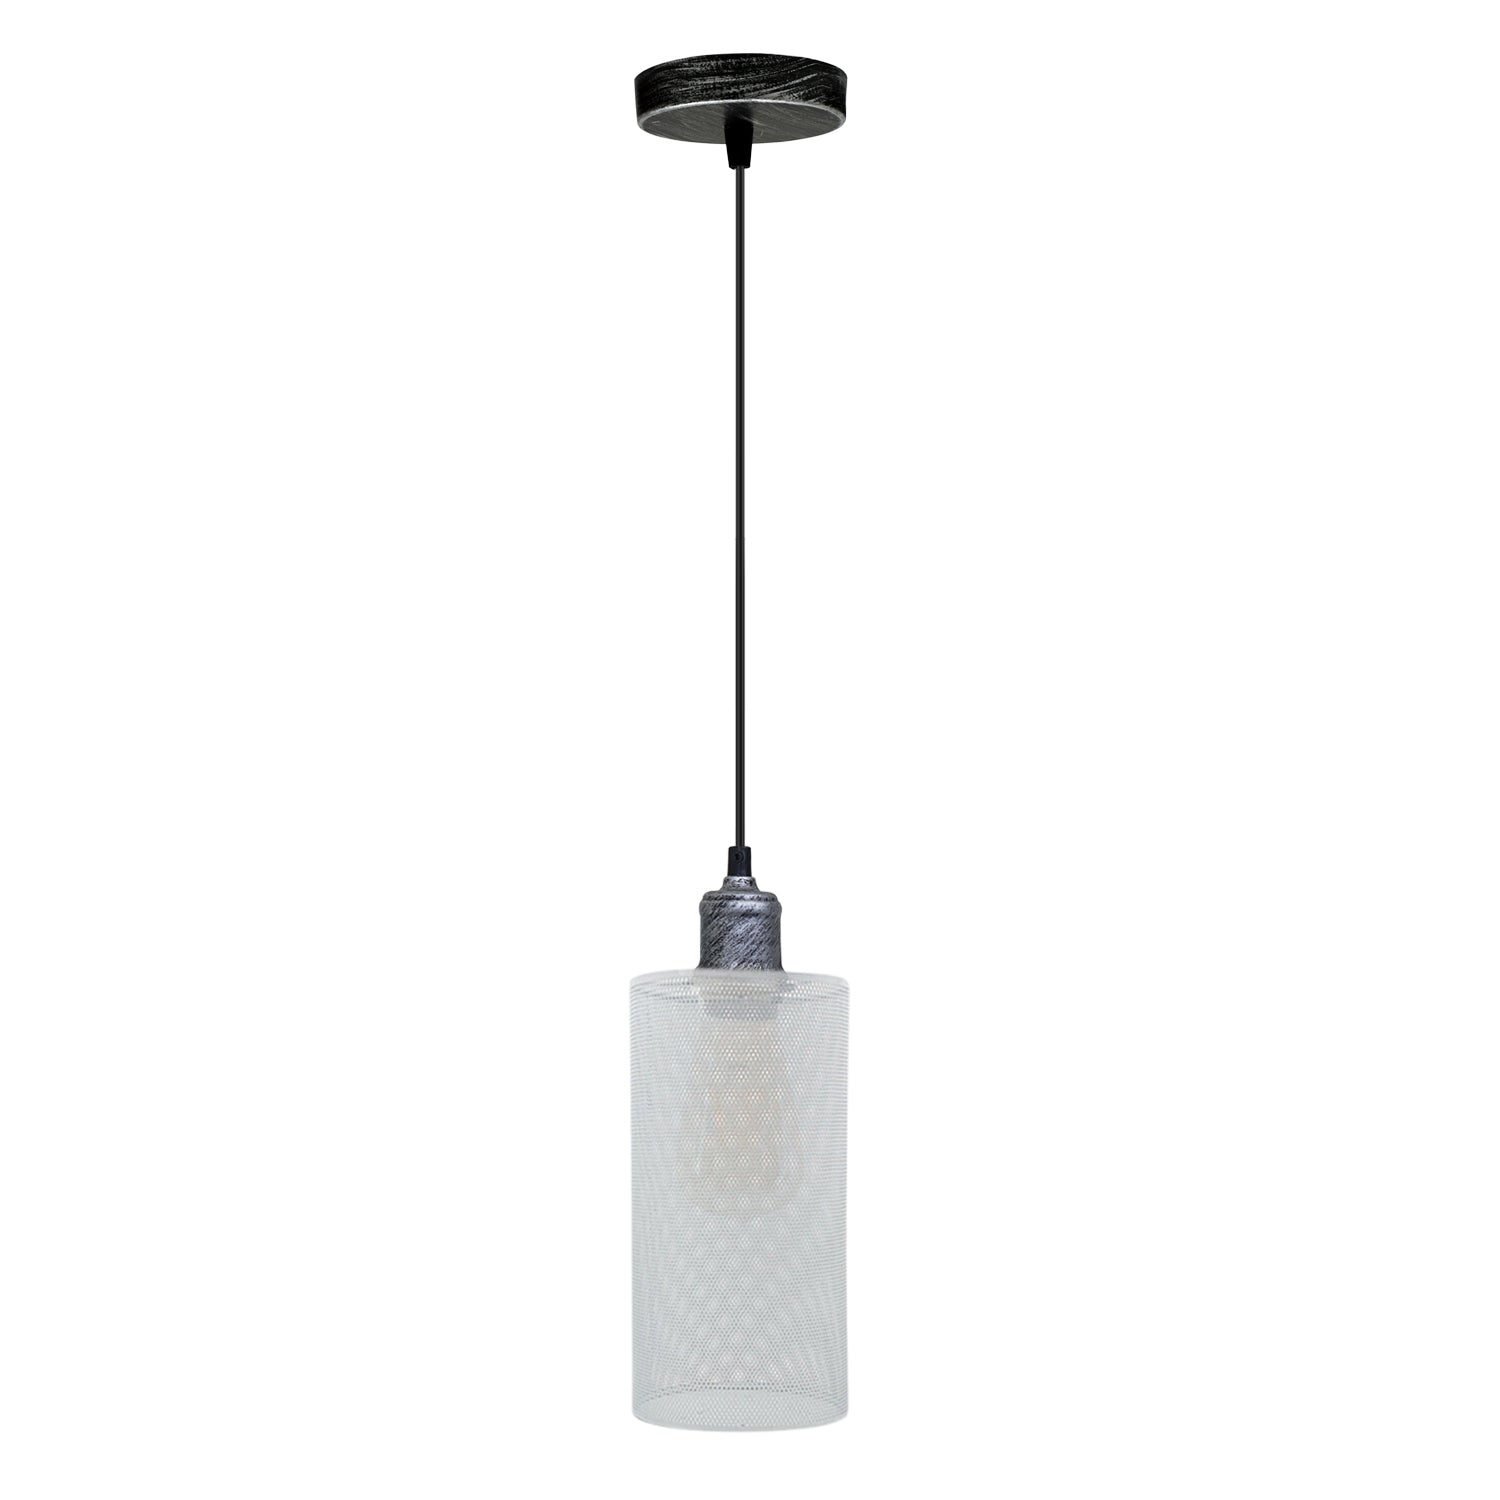 Industrial Hanging Pattern White Lamp shade Wedding Decoration Metal Lanterns~3443 - LEDSone UK Ltd